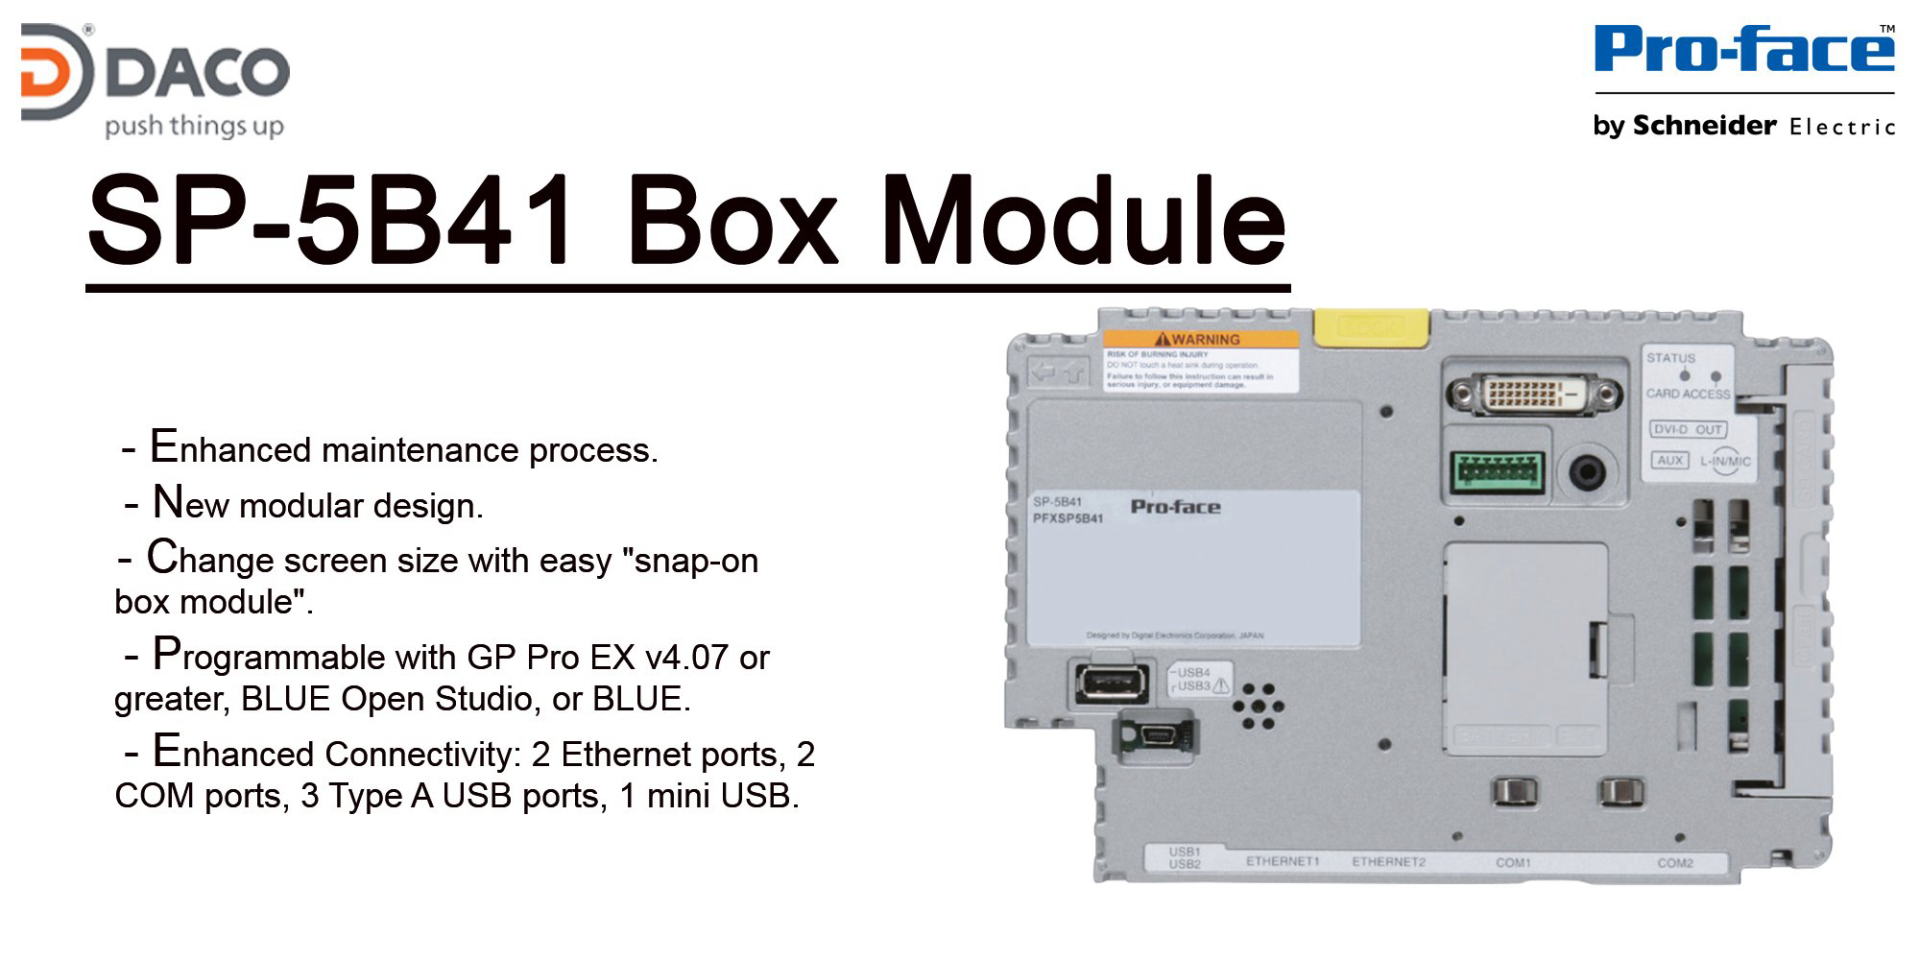 PFXSP5B41 (SP5B41) (SP-5B41) Box Module tiêu chuẩn cho dòng màn hình cảm ứng HMI Proface Series SP5000